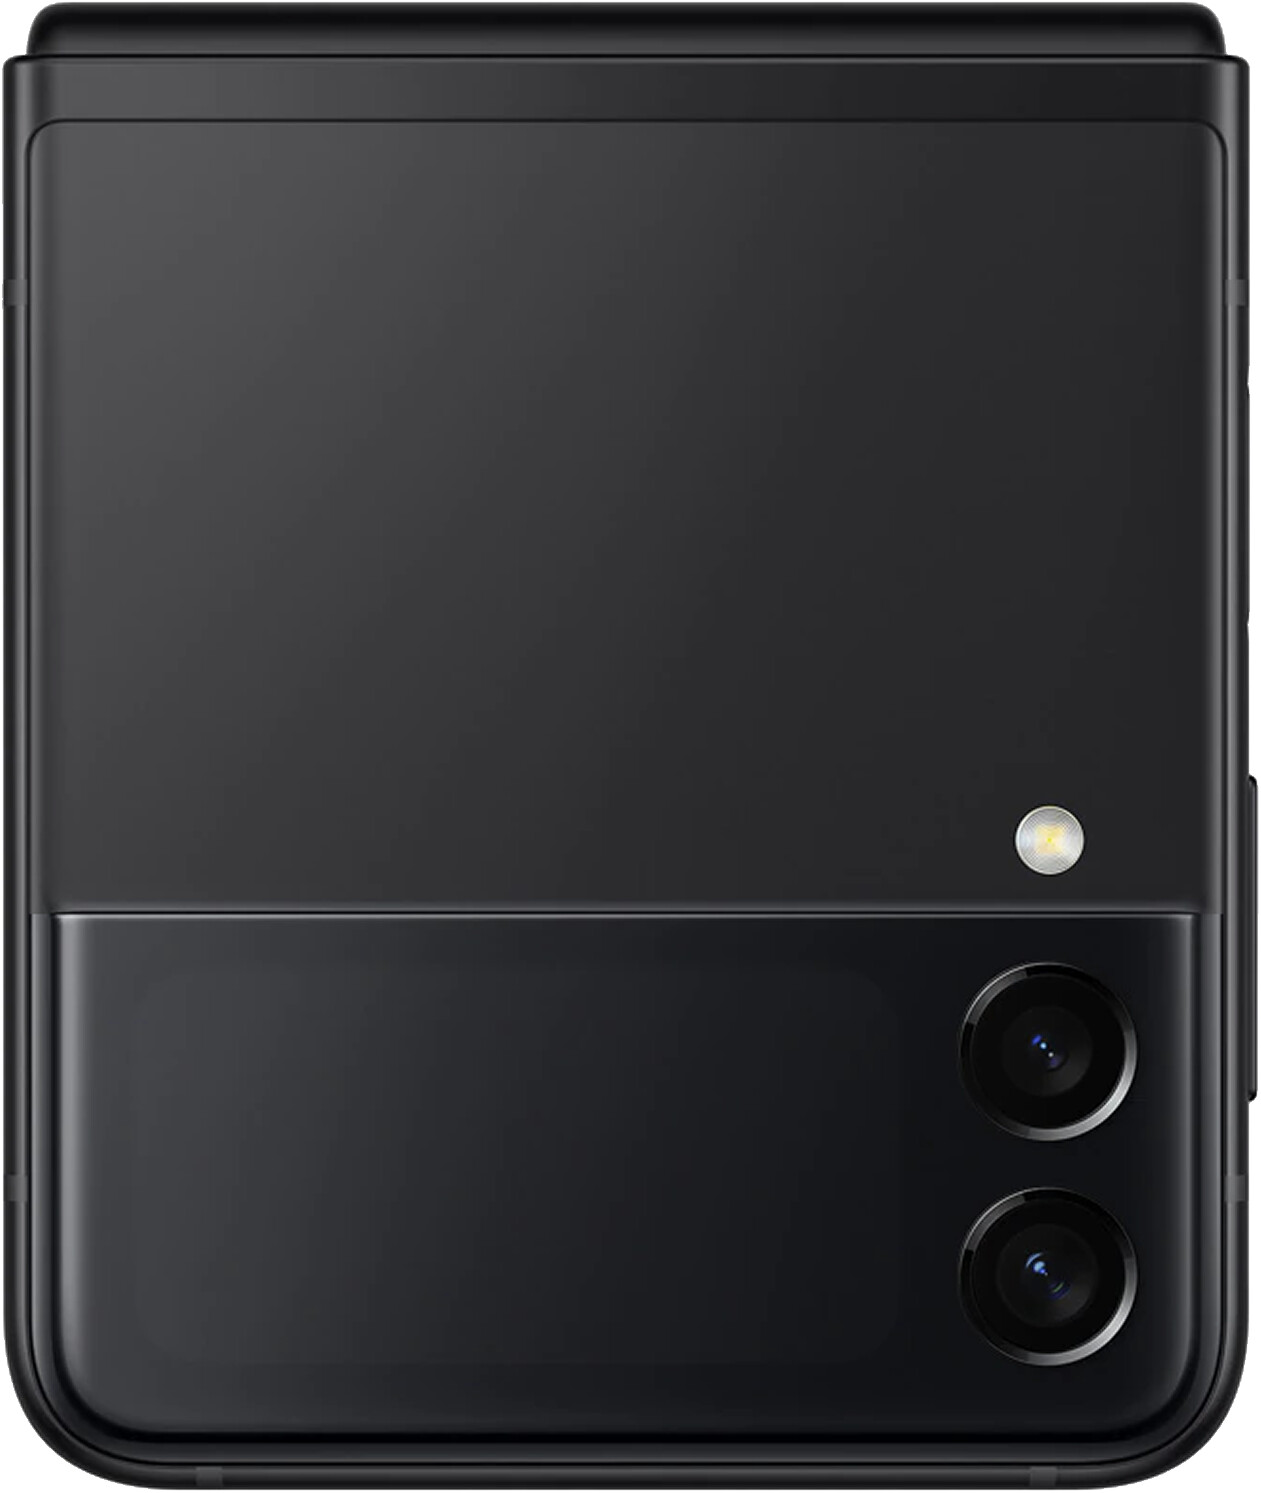 Samsung Galaxy Z Flip4 256GB